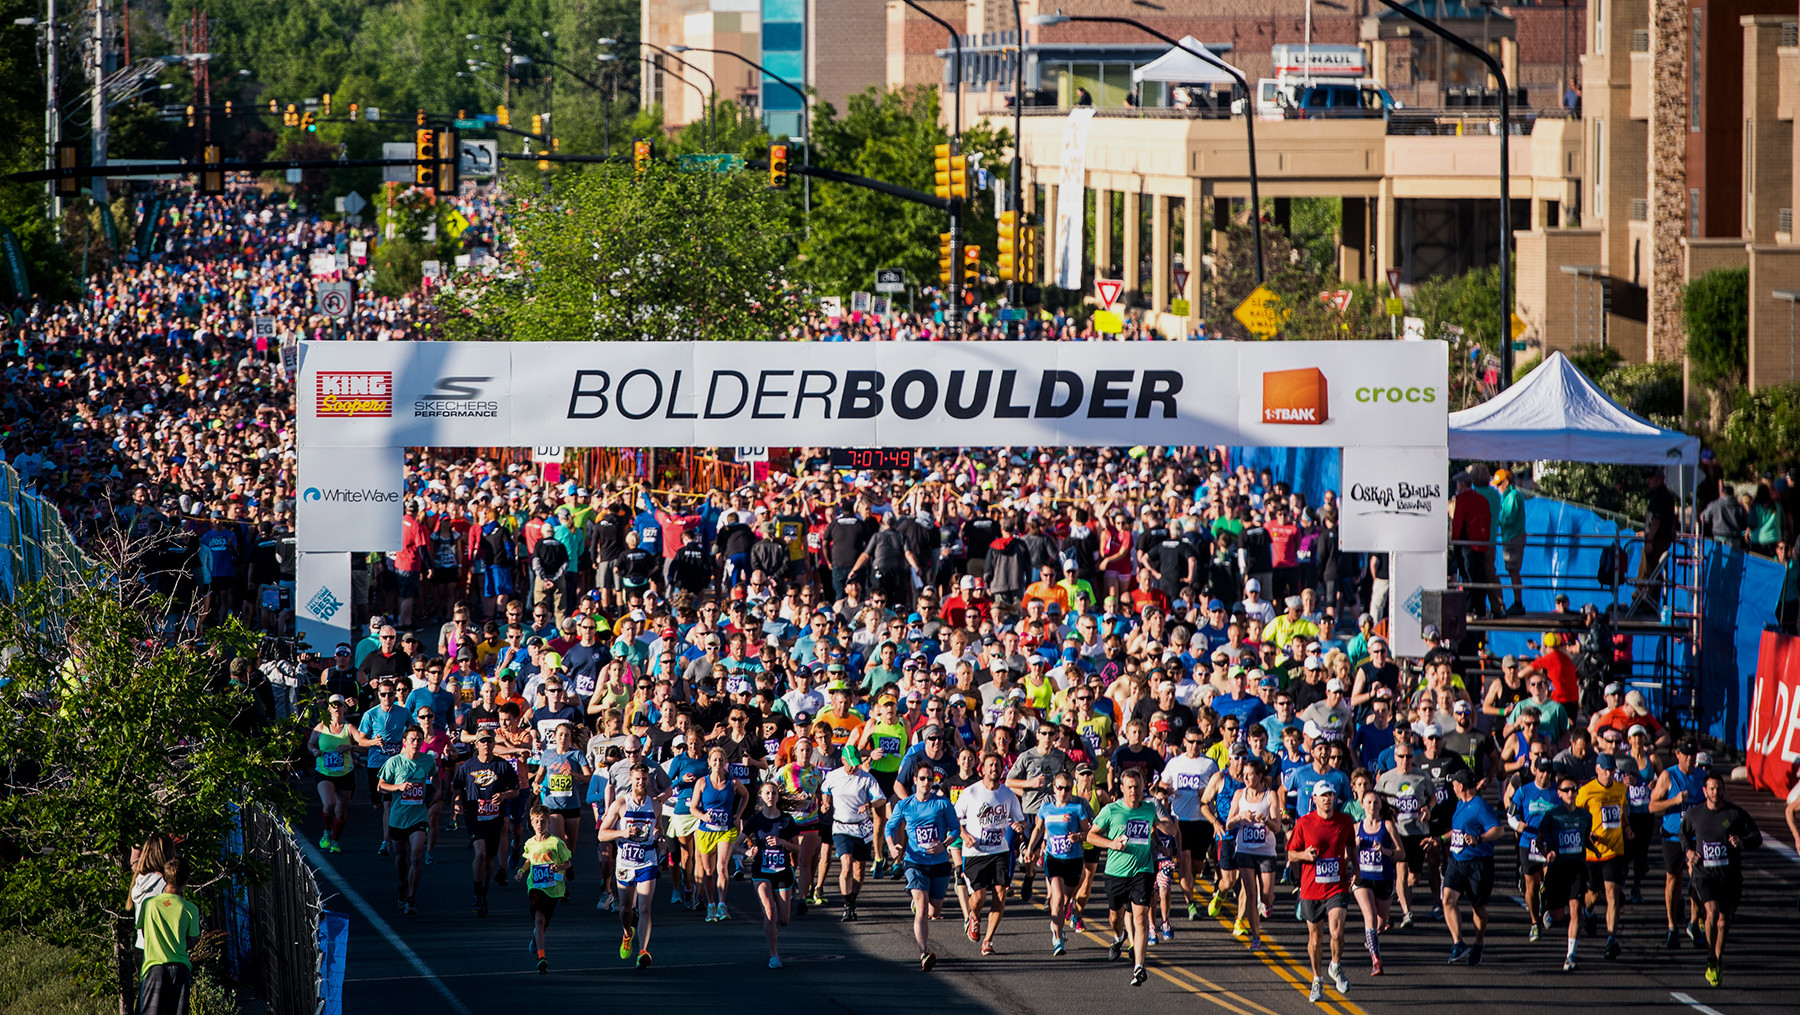 2021 Bolder Boulder Cancelled Again